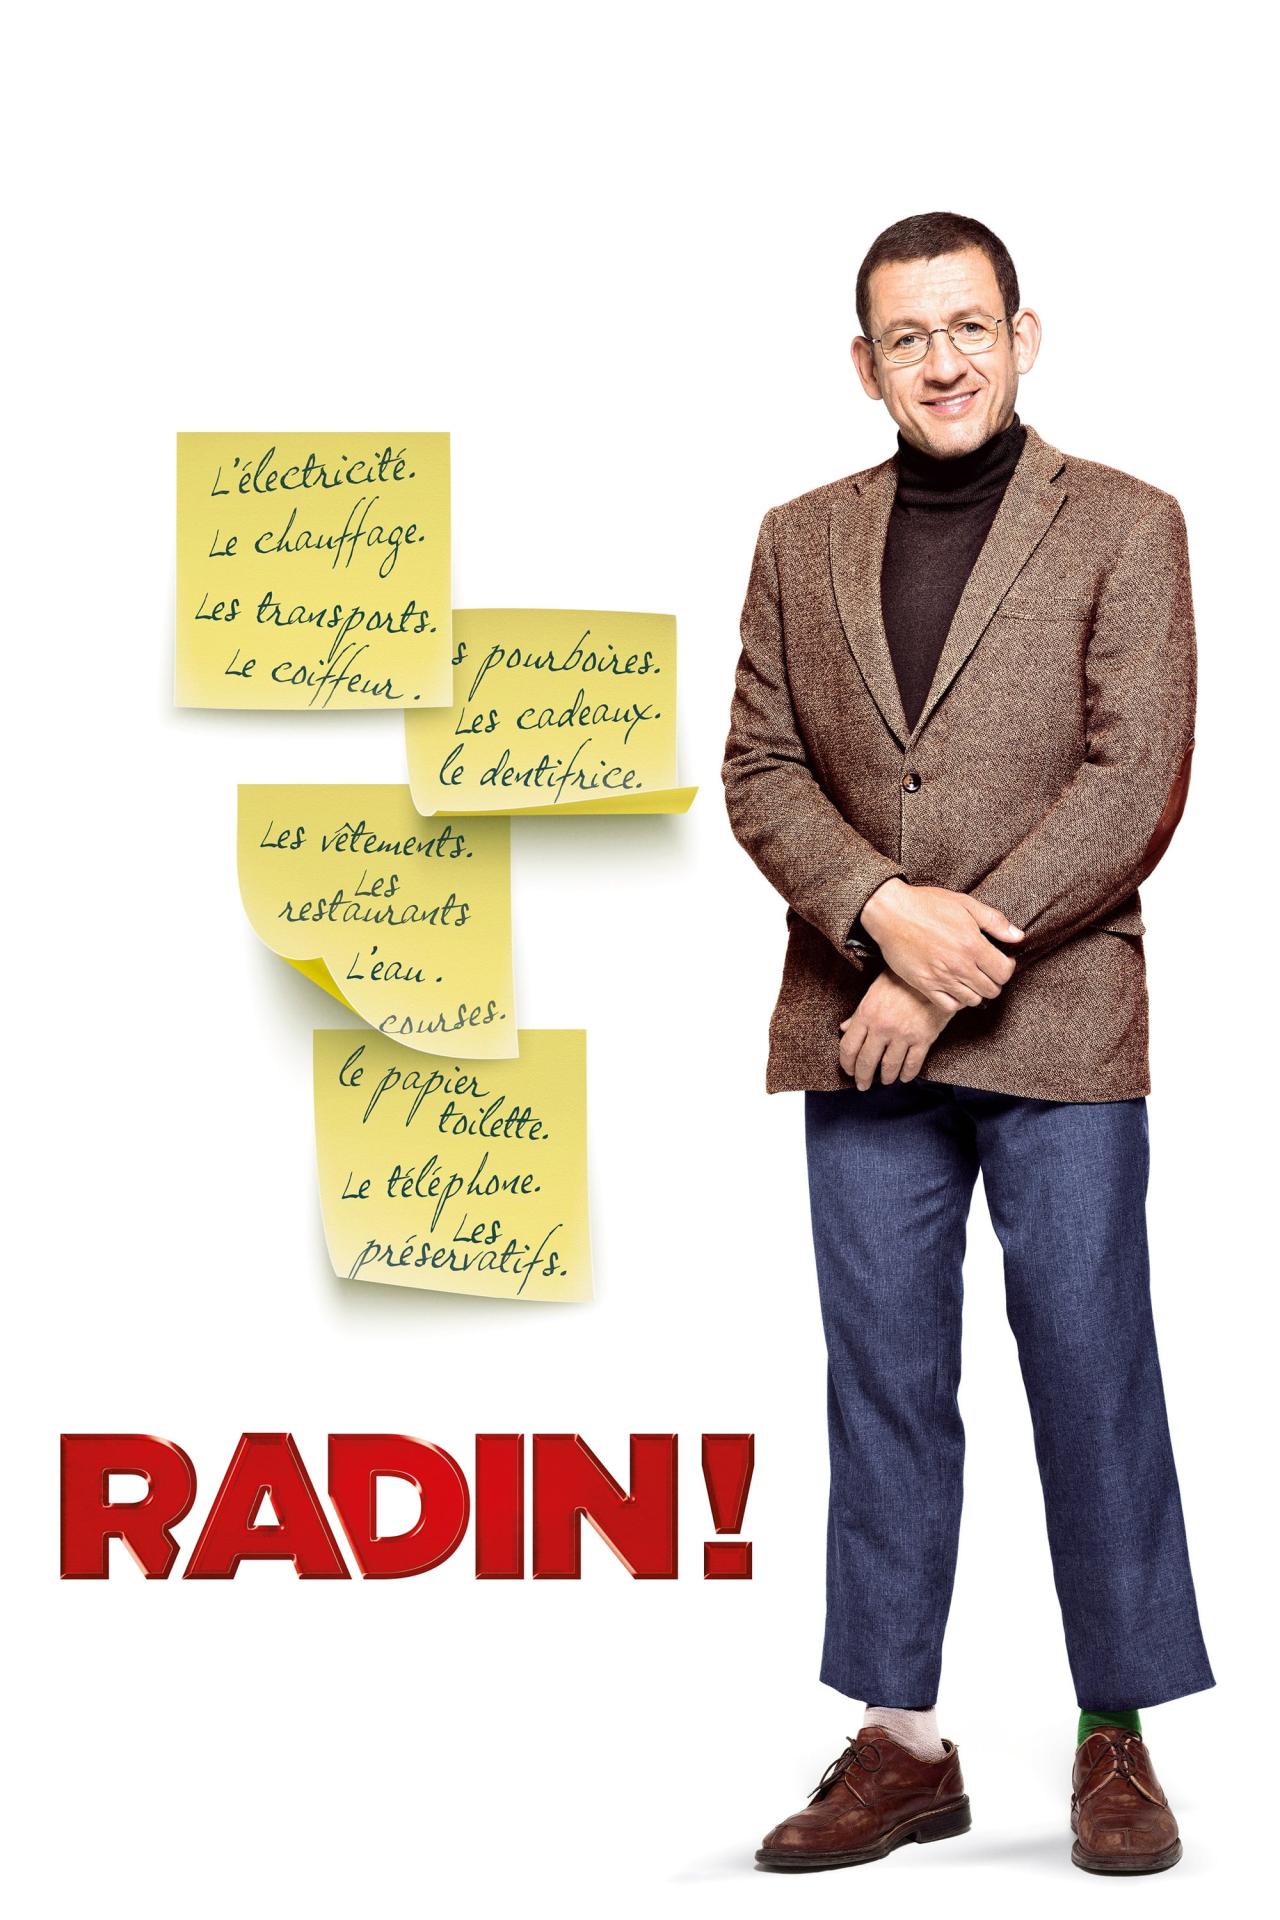 Radin! est-il disponible sur Netflix ou autre ?